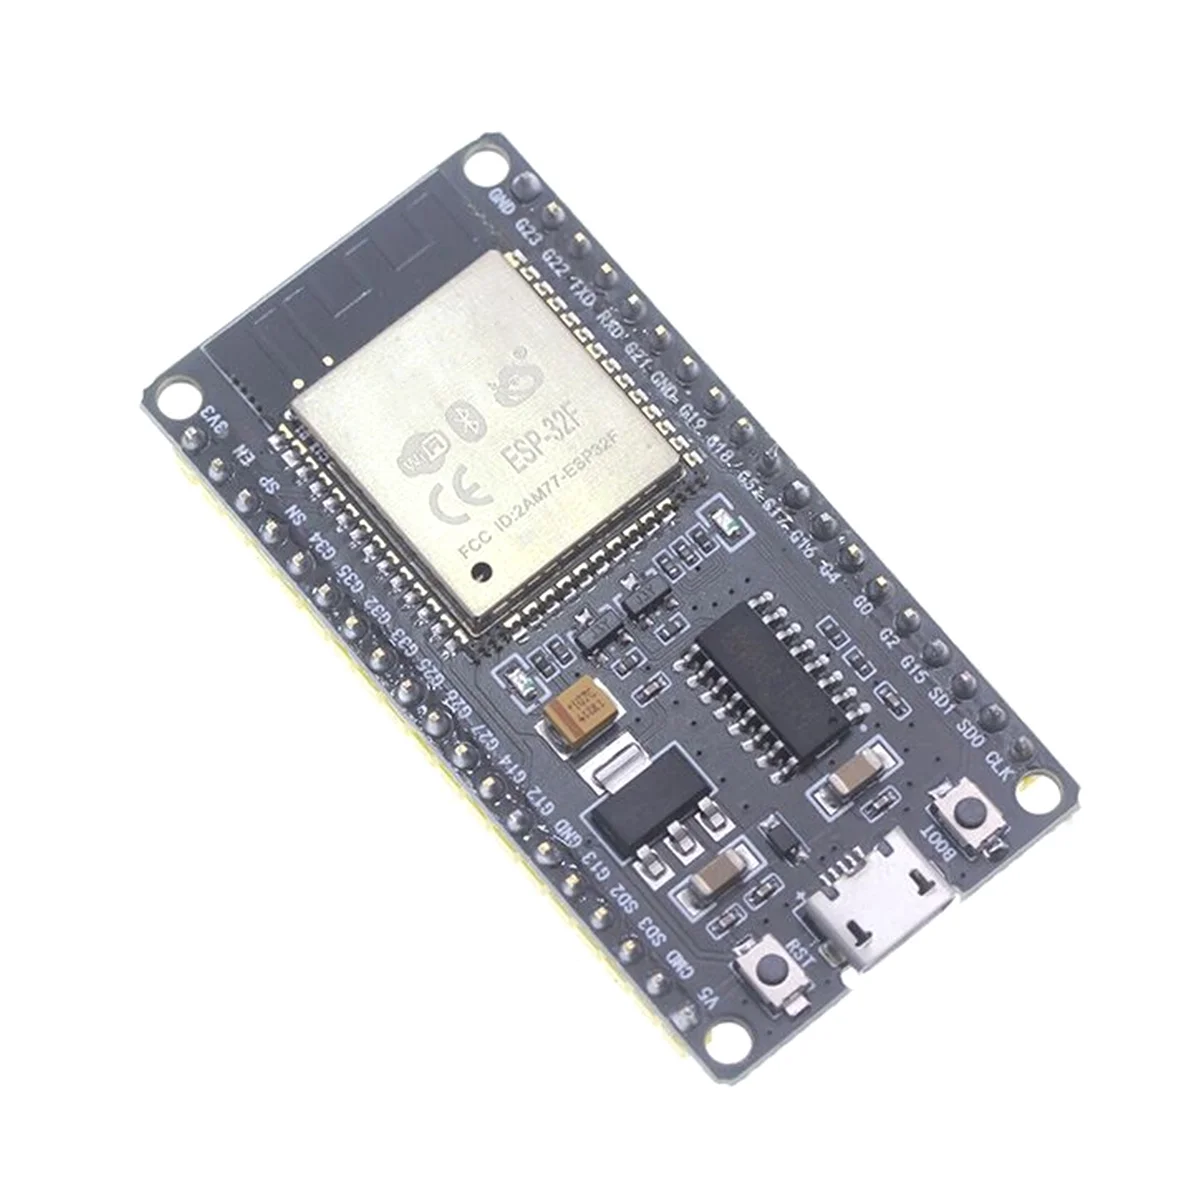 ESP32F modul fejlesztő kártya CH340 illesztőprogram vezeték nélküli WiFi Bluetooth fejlesztőkártya 1,3 hüvelykes színes képernyővel - 1